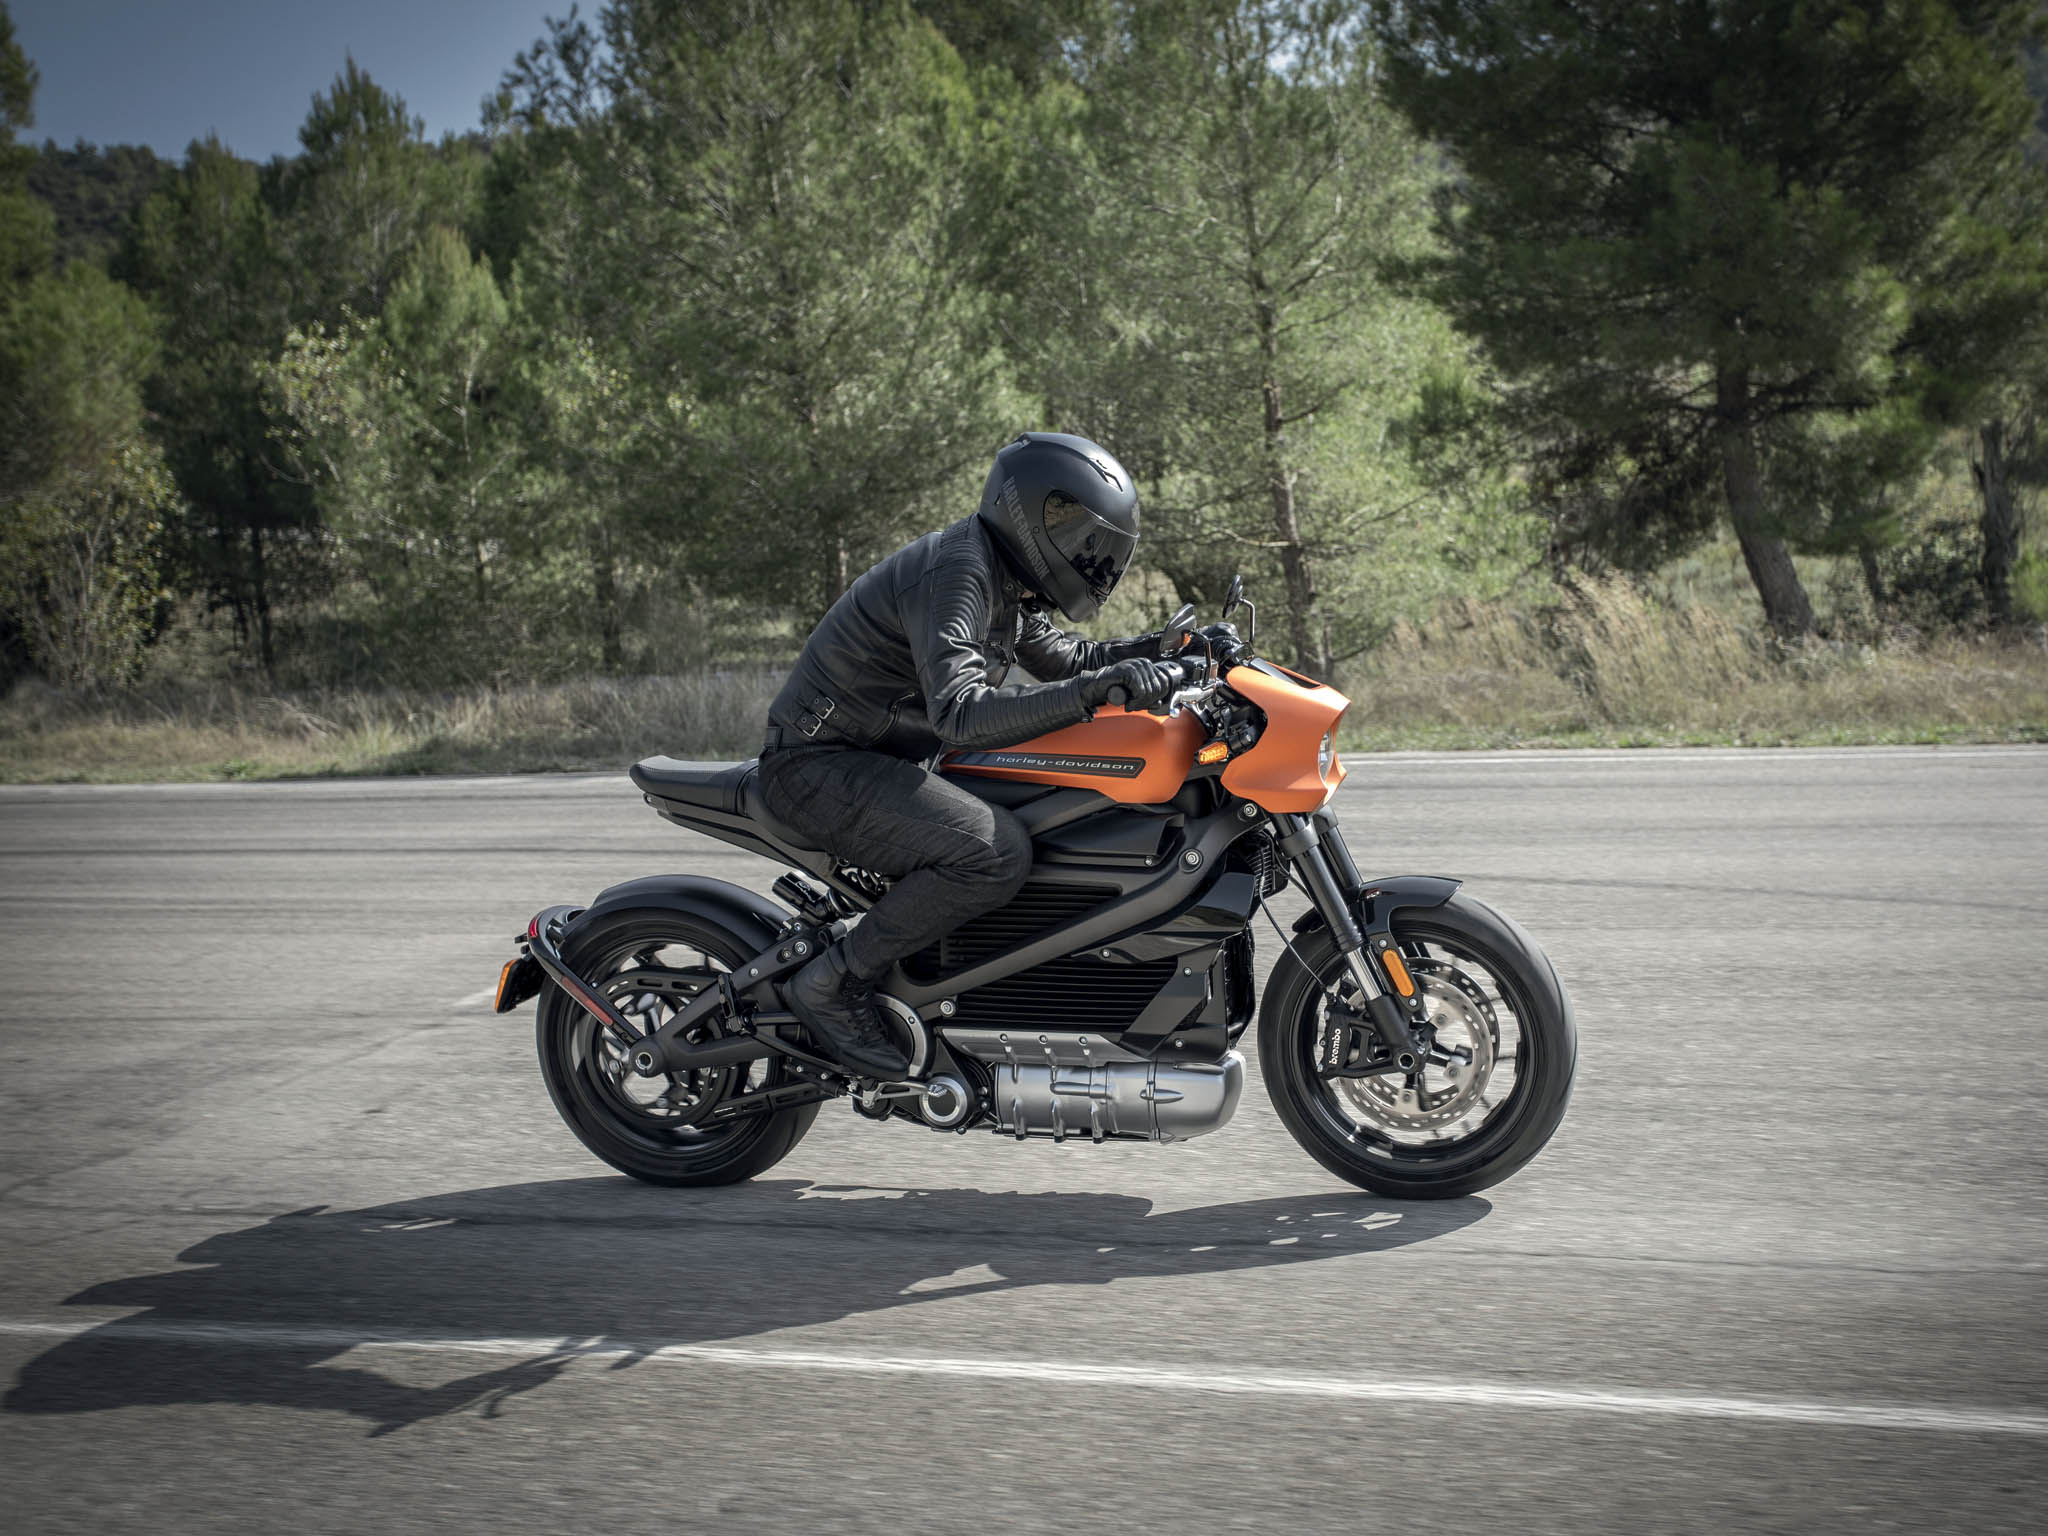 LiveWire, prvn sriov vyrbn elektrick motocykl od Harley-Davidson